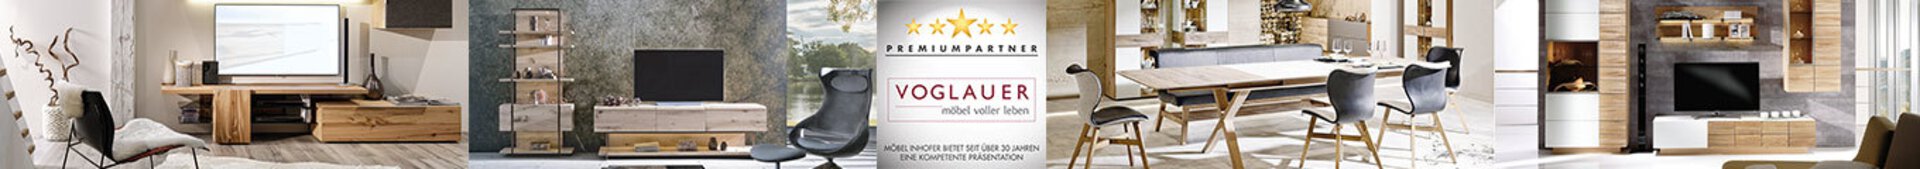 Bannerbild der Premiumpartner-Marke Voglauer